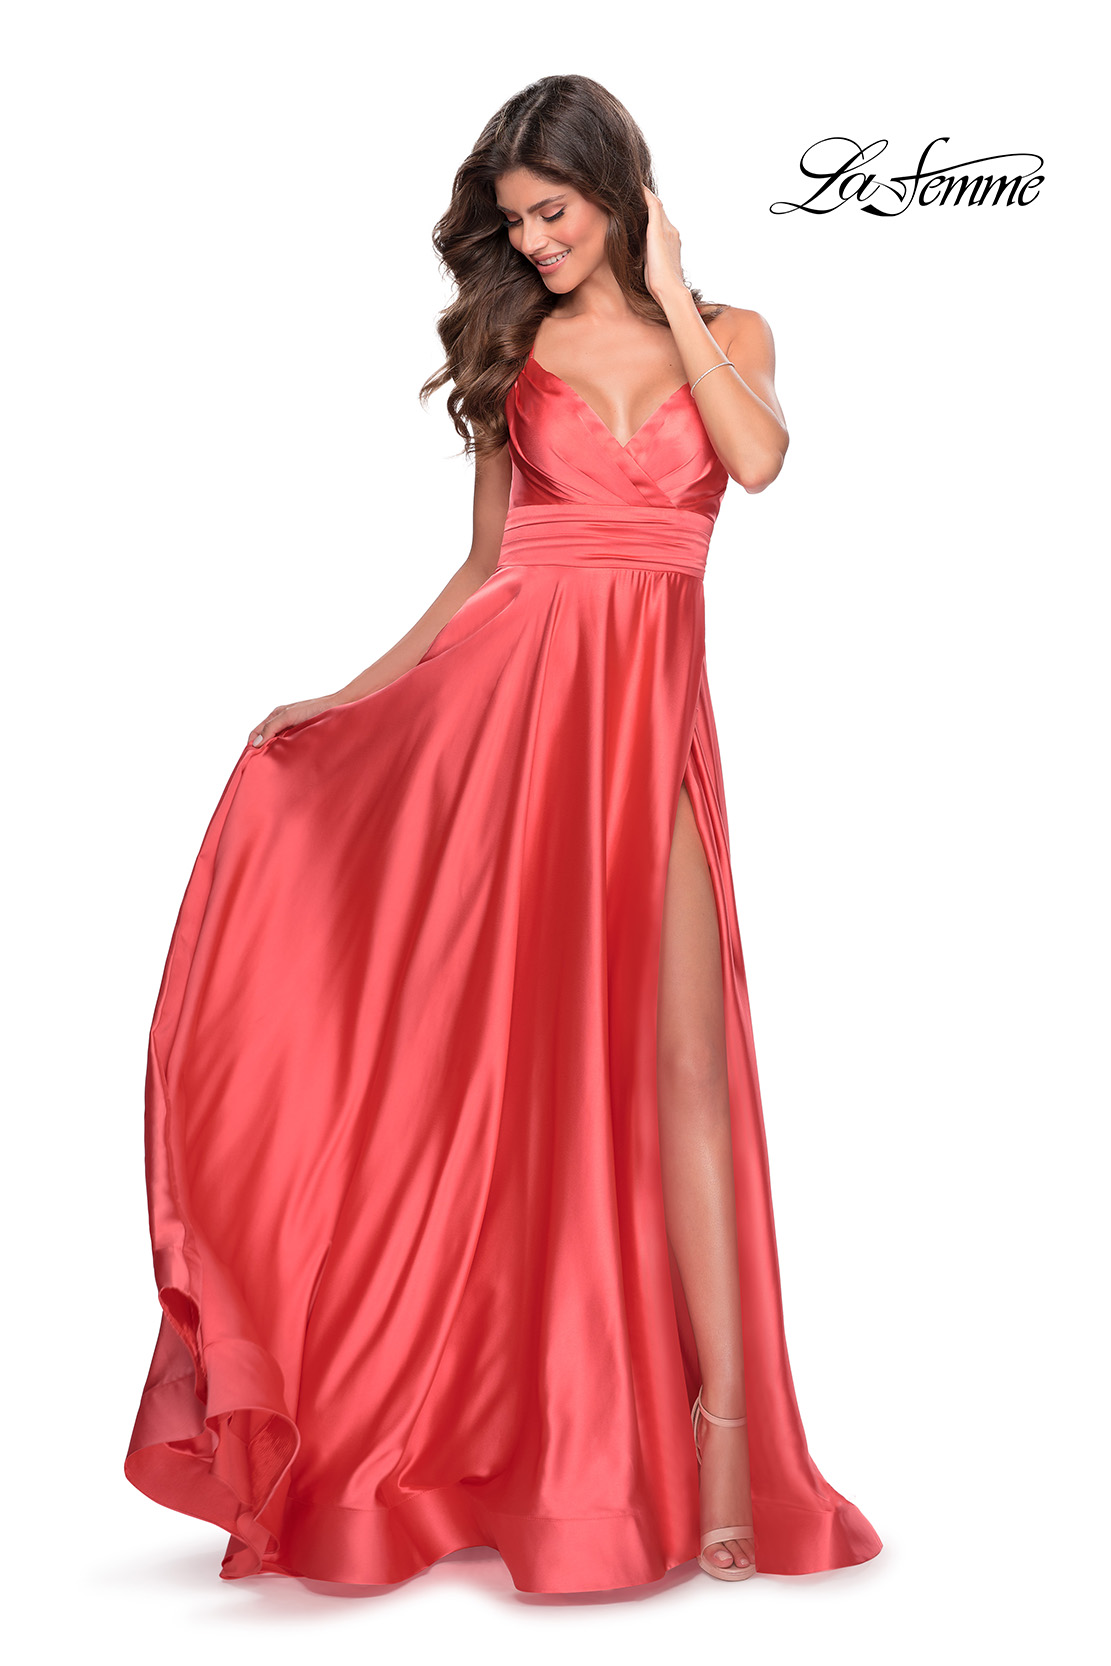 New Women's Elegant Empire Waist Long Sleeve Satin Maxi Dress (T300001) -  eDressit | Long dress outfits, Satin maxi dress, Maxi dress